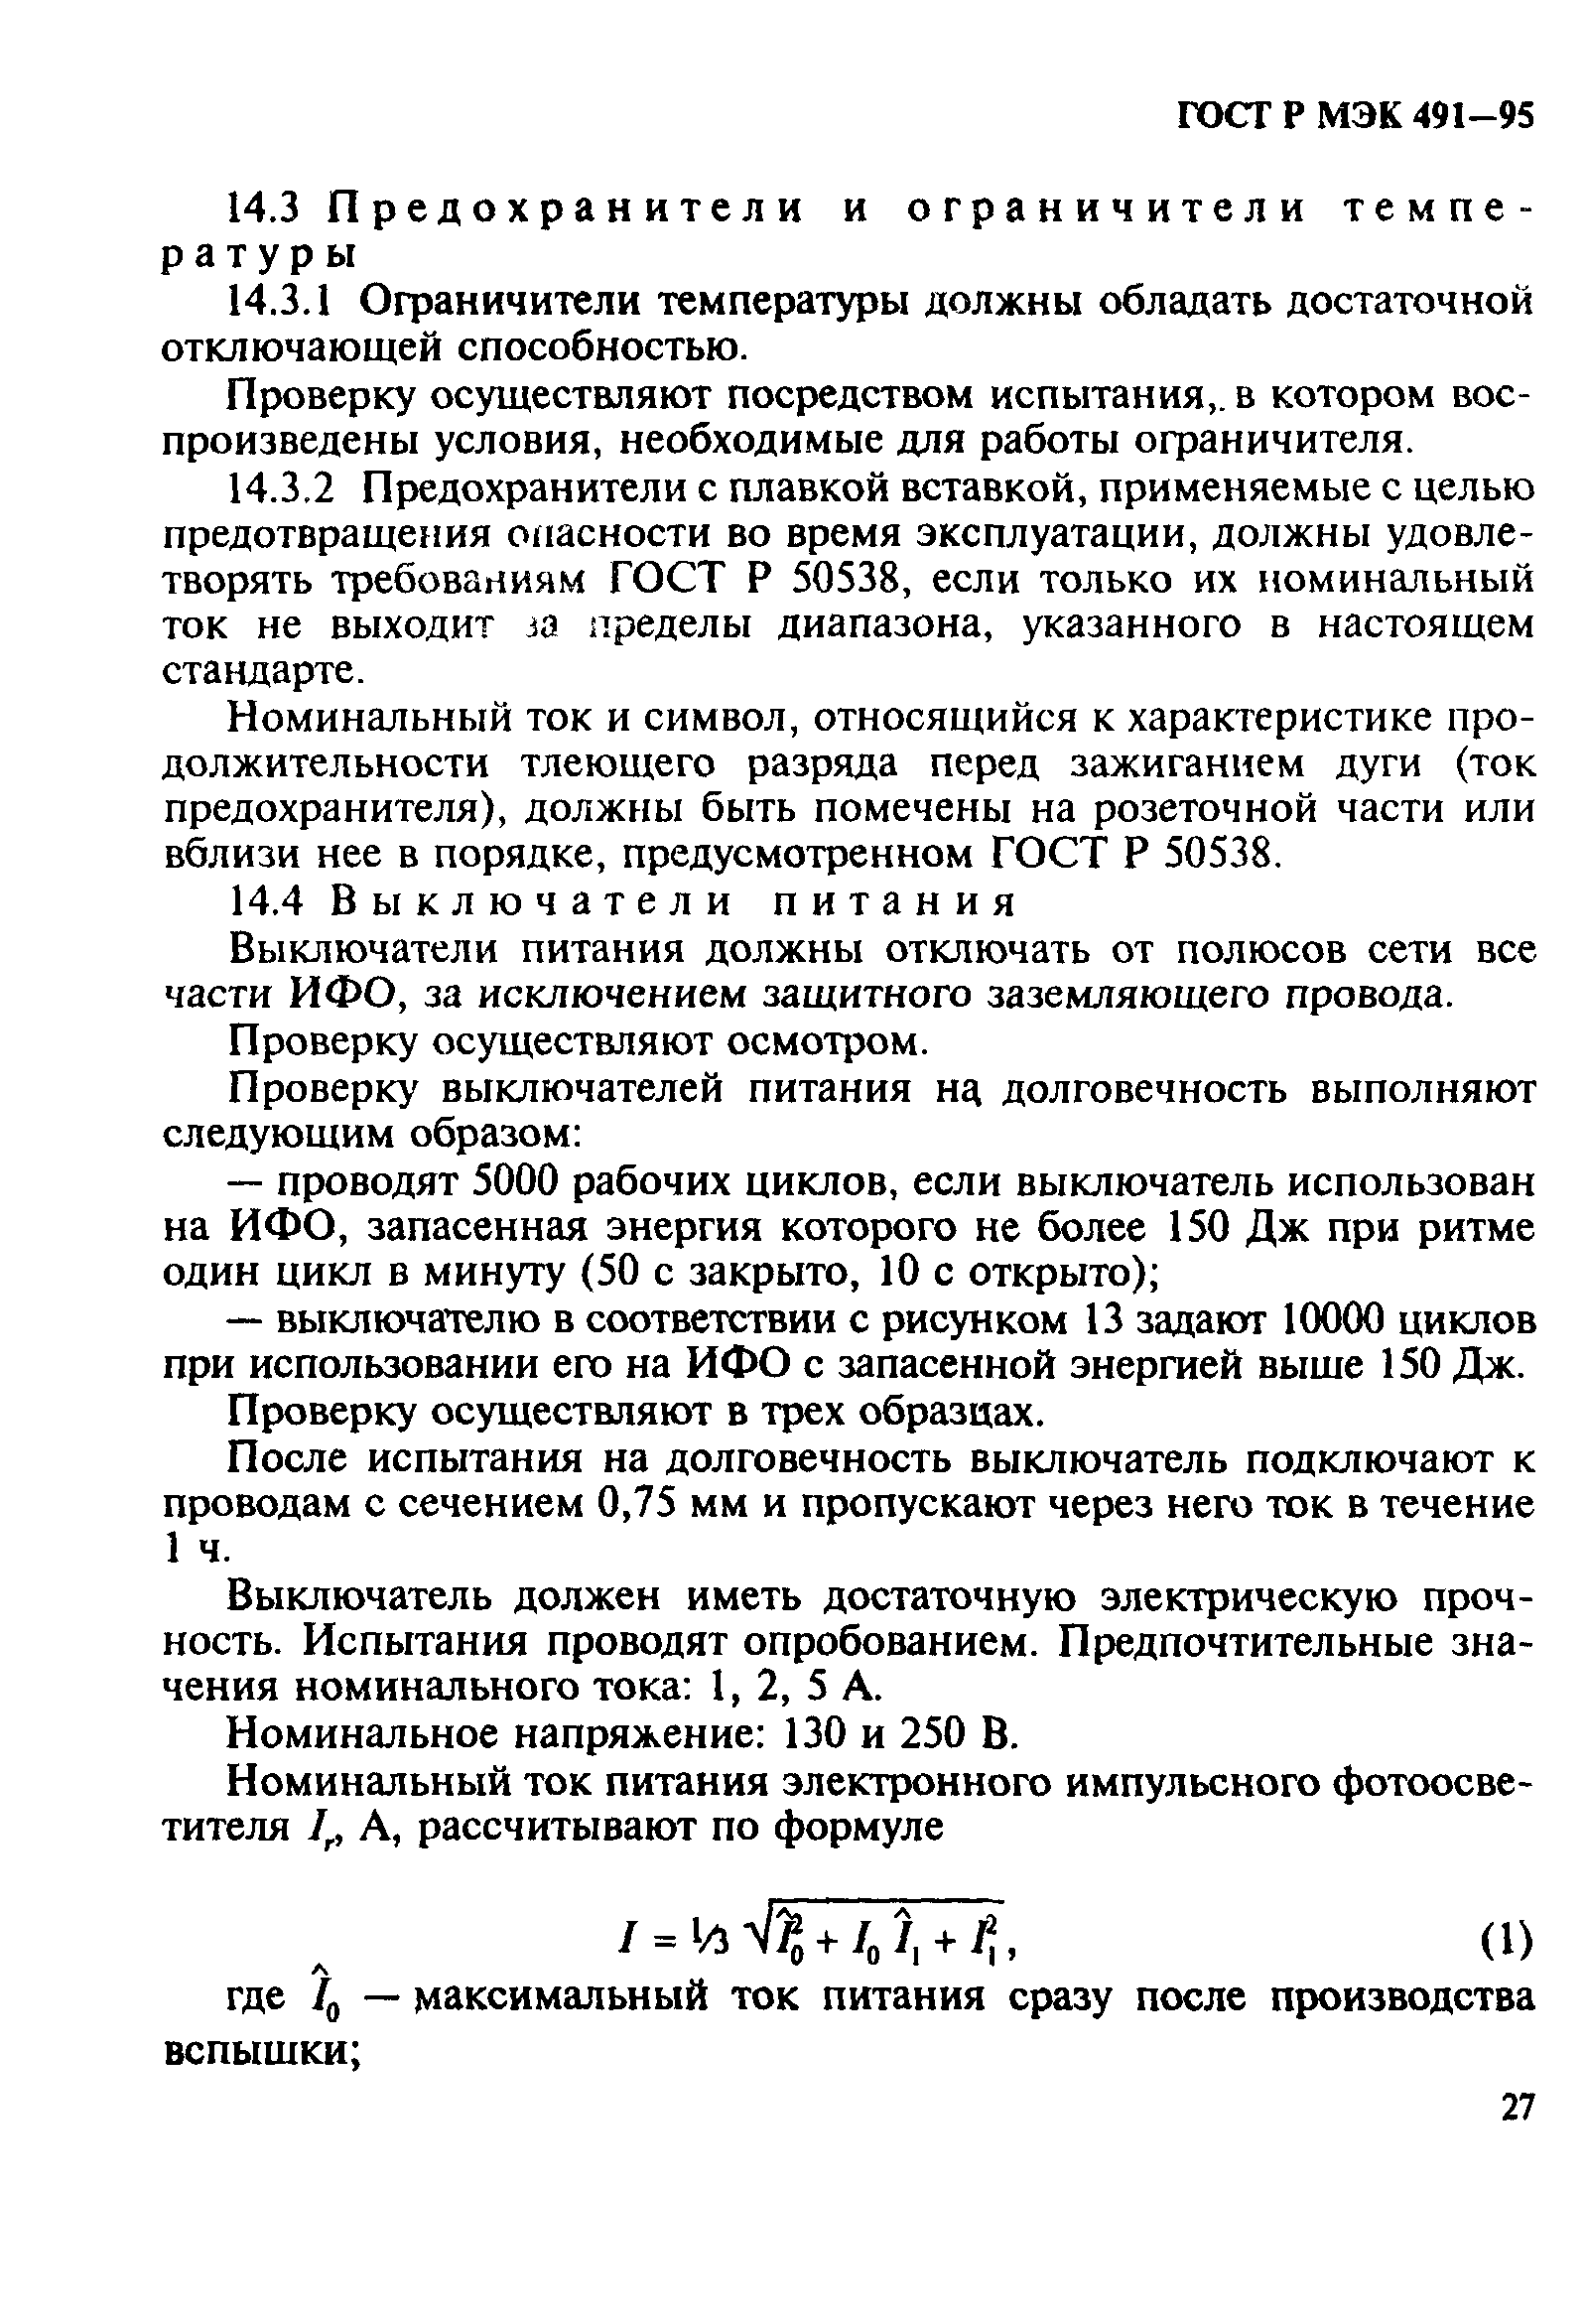 ГОСТ Р МЭК 491-95